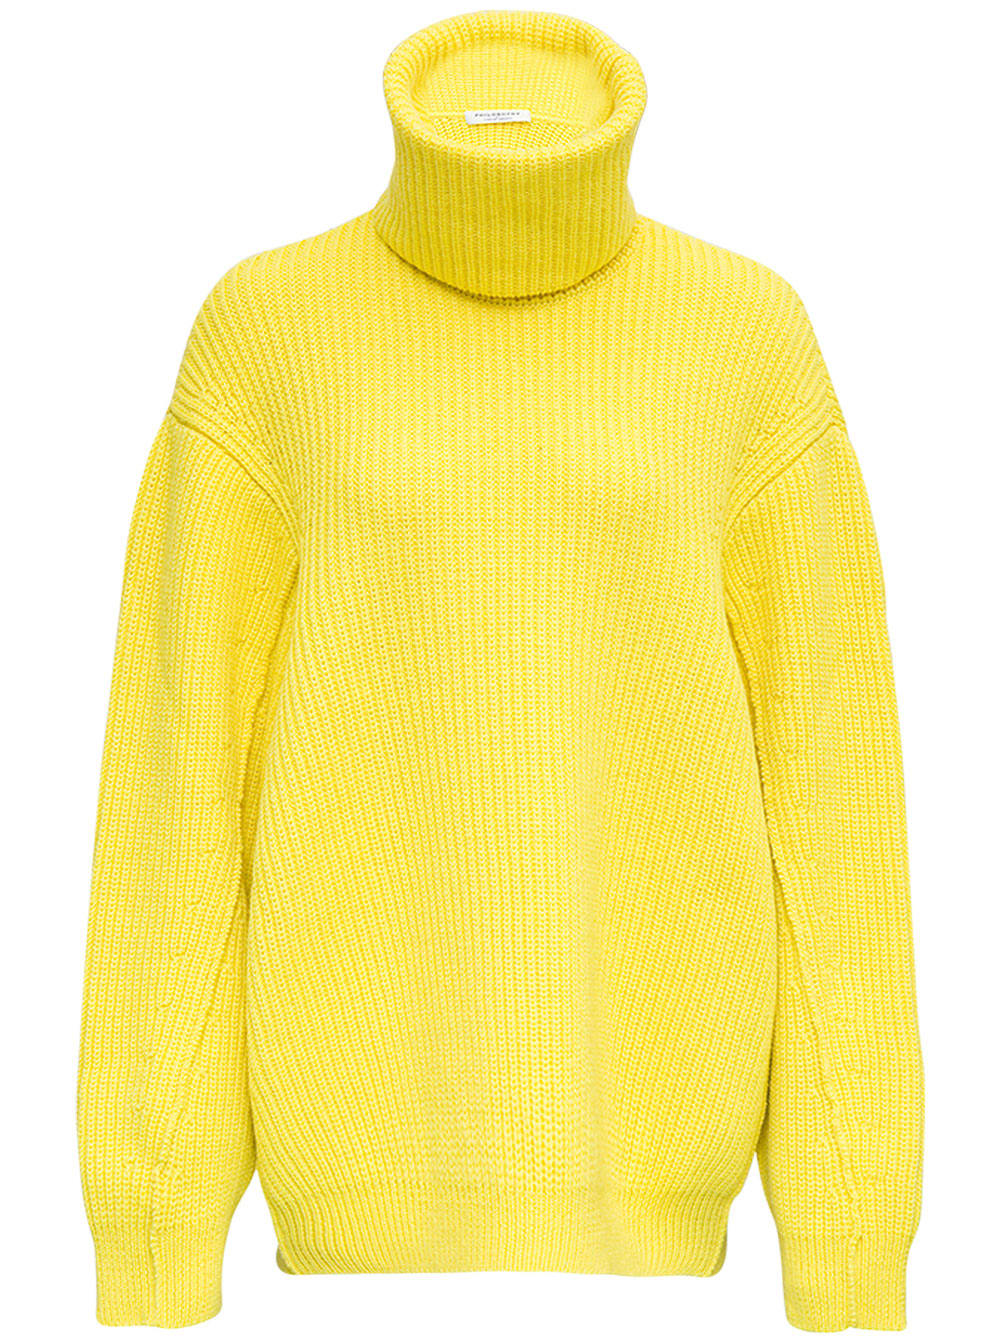 Philosophy di Lorenzo Serafini Yellow Oversize Ribbed Wool Sweater